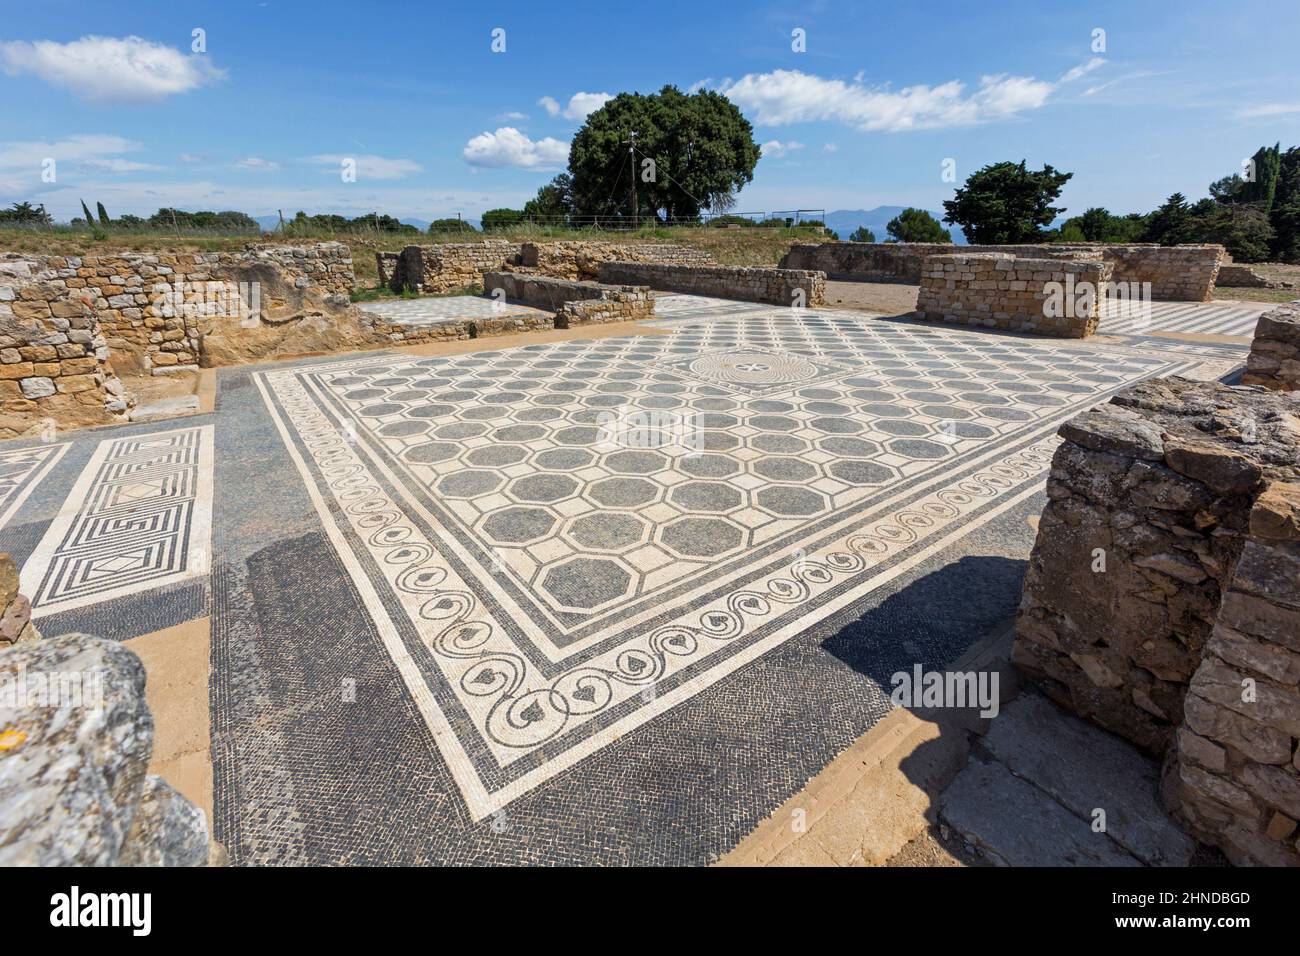 Empuries noto anche come Ampurias, provincia di Girona, in Catalogna, Spagna. In situ pavimento a mosaico della villa romana. Empuries fu fondata dai Greci nel 6 Foto Stock